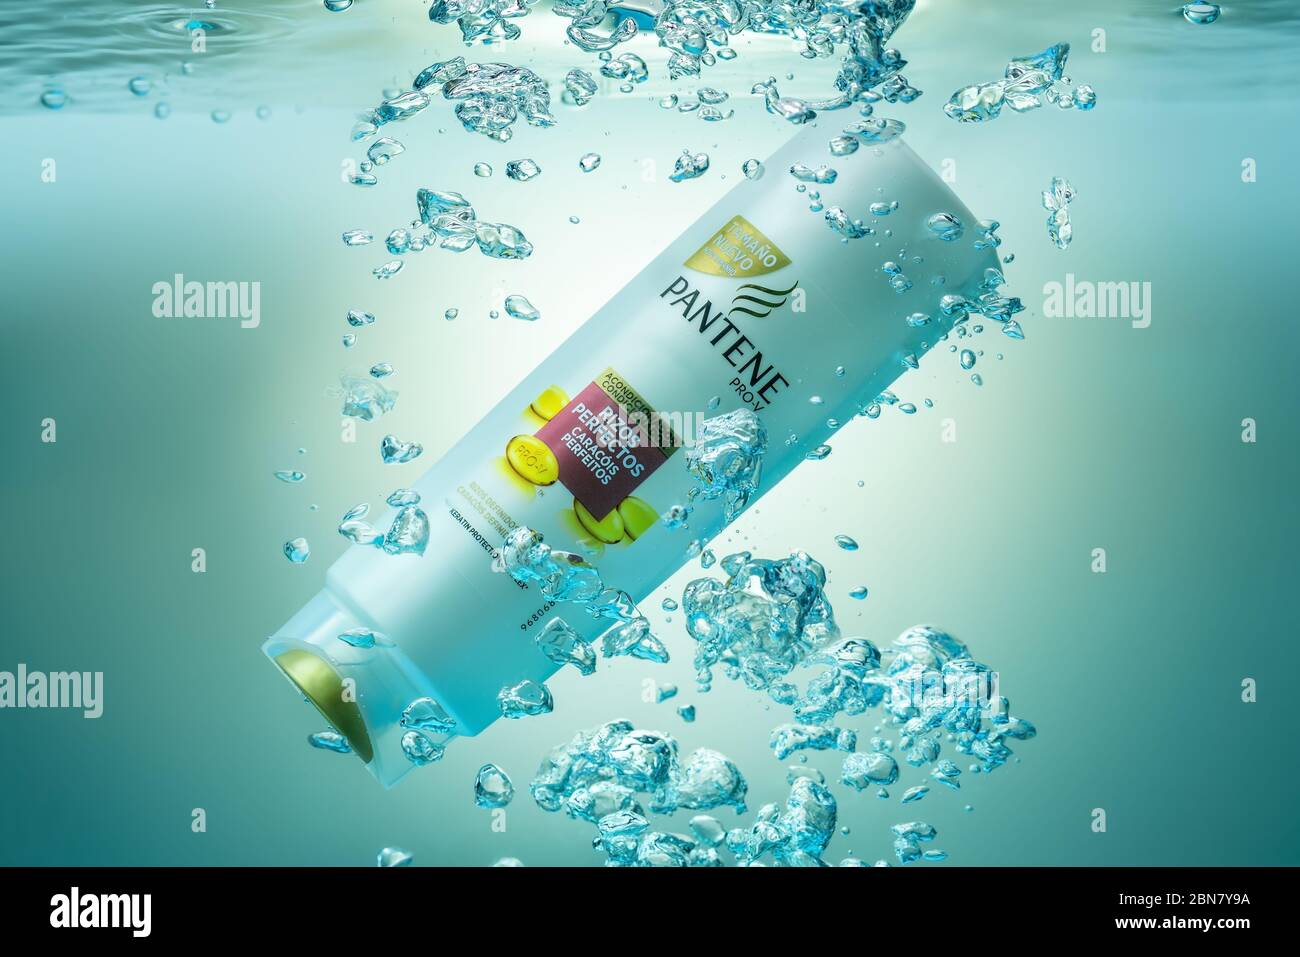 Portugal Faro, 5. Mai 2020 - Shampoo Conditioner, von der Firma Panten Unterwasser in einem Aquarium, mit Blasen und Spritzer. Illustratives Editorial Stockfoto